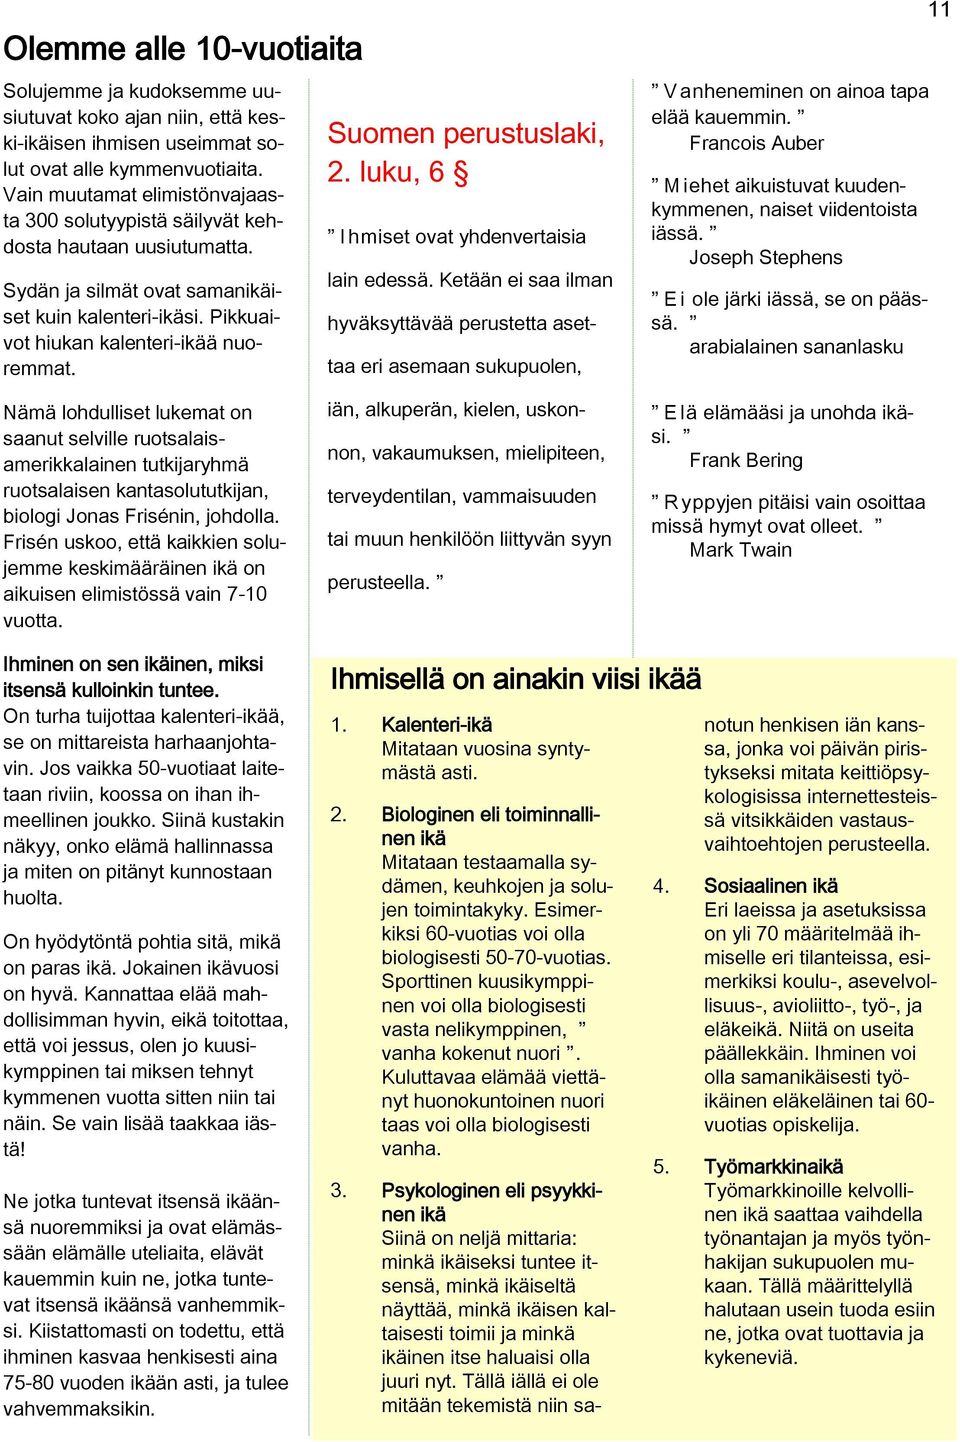 Suomen perustuslaki, 2. luku, 6 I hmiset ovat yhdenvertaisia lain edessä. Ketään ei saa ilman hyväksyttävää perustetta asettaa eri asemaan sukupuolen, V anheneminen on ainoa tapa elää kauemmin.